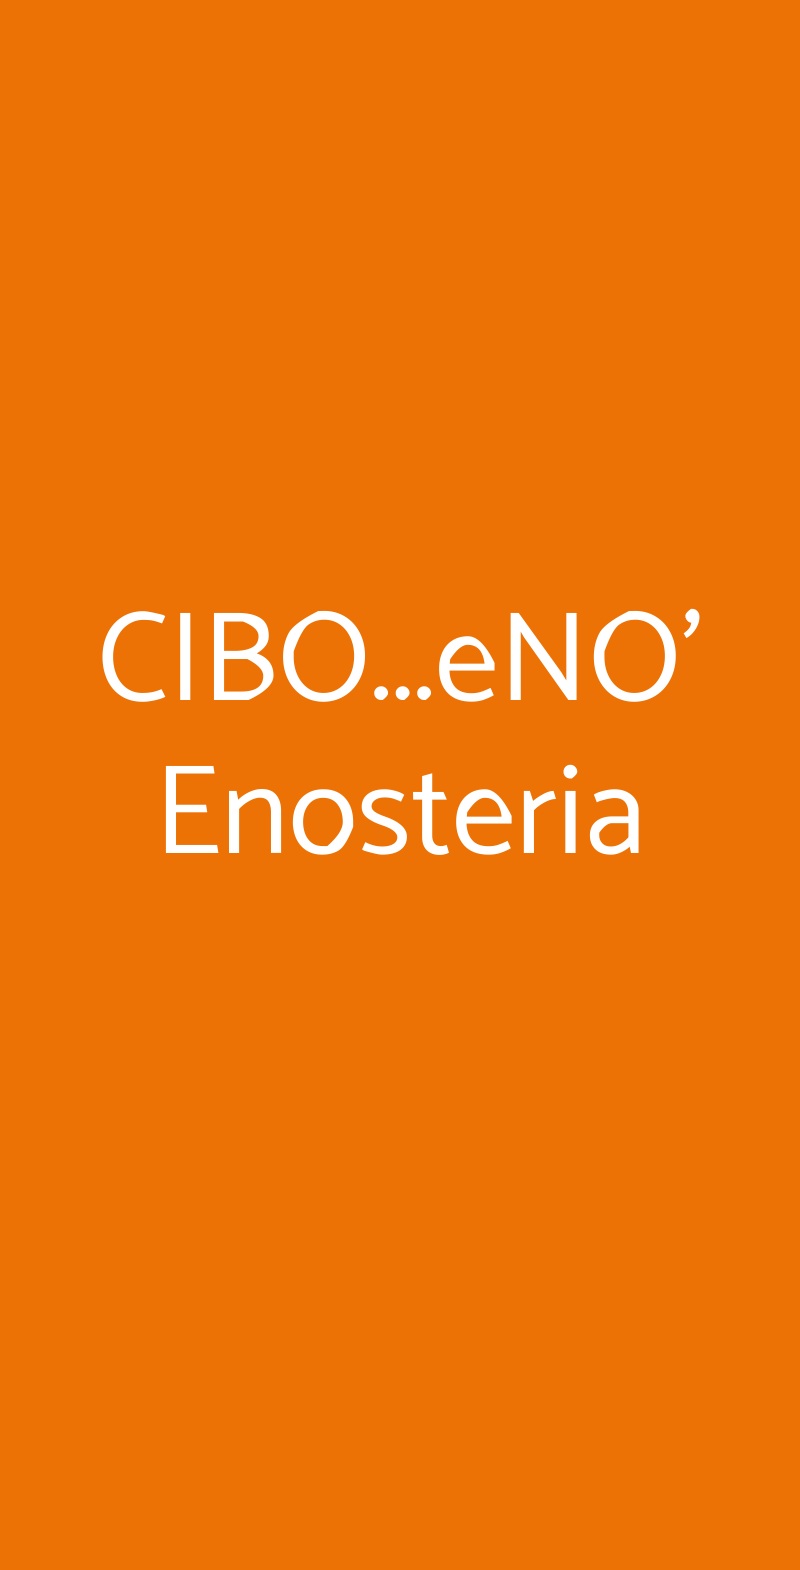 CIBO...eNO' Enosteria Milano menù 1 pagina